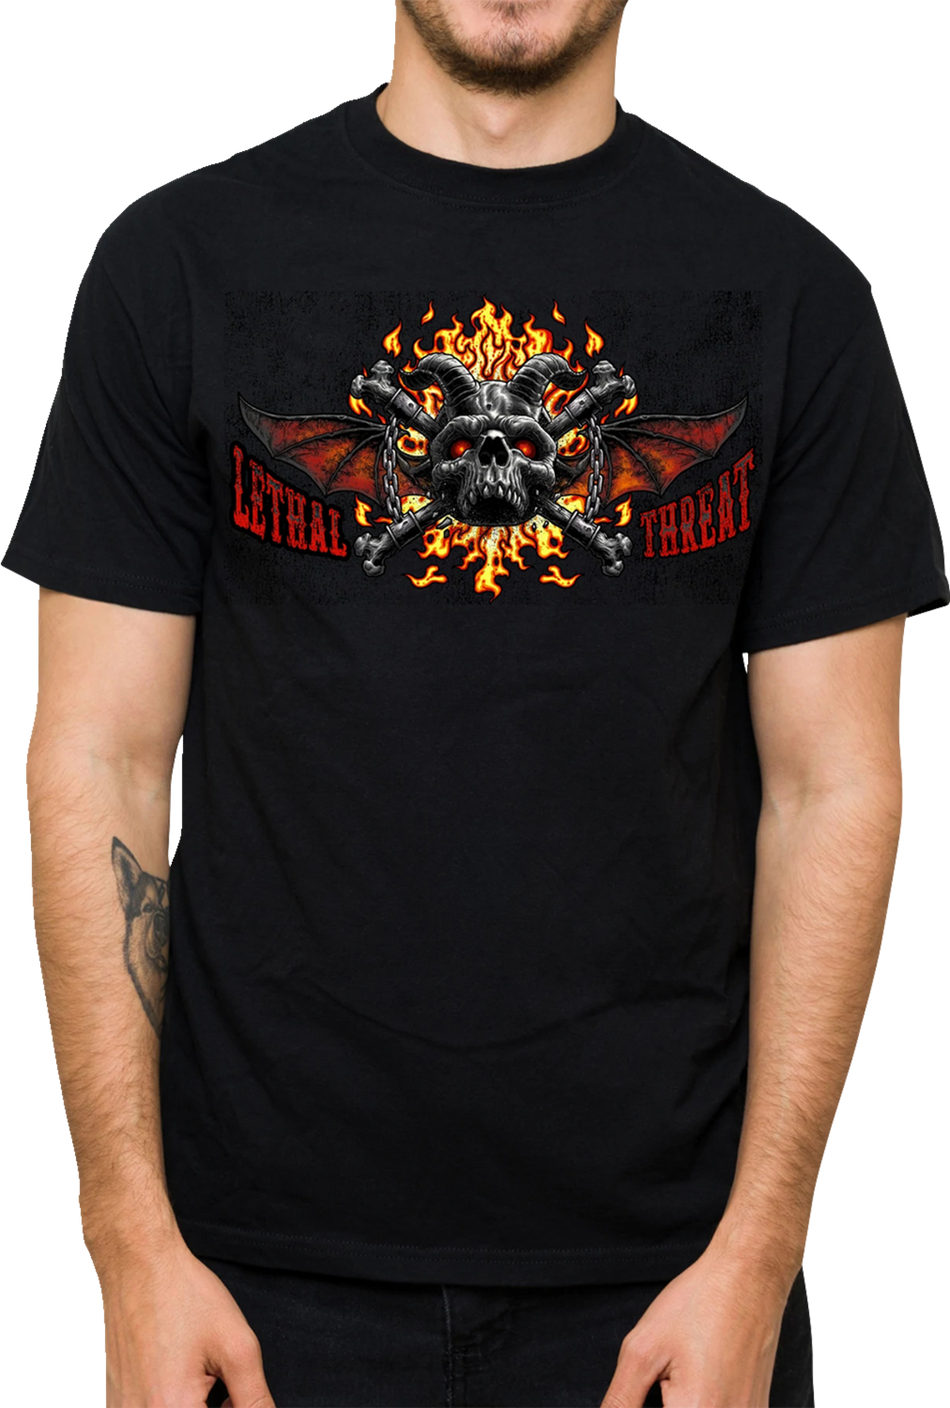 LETHAL THREAT Hell Was Full T-Shirt - Black - 4XL LT20901-4XL